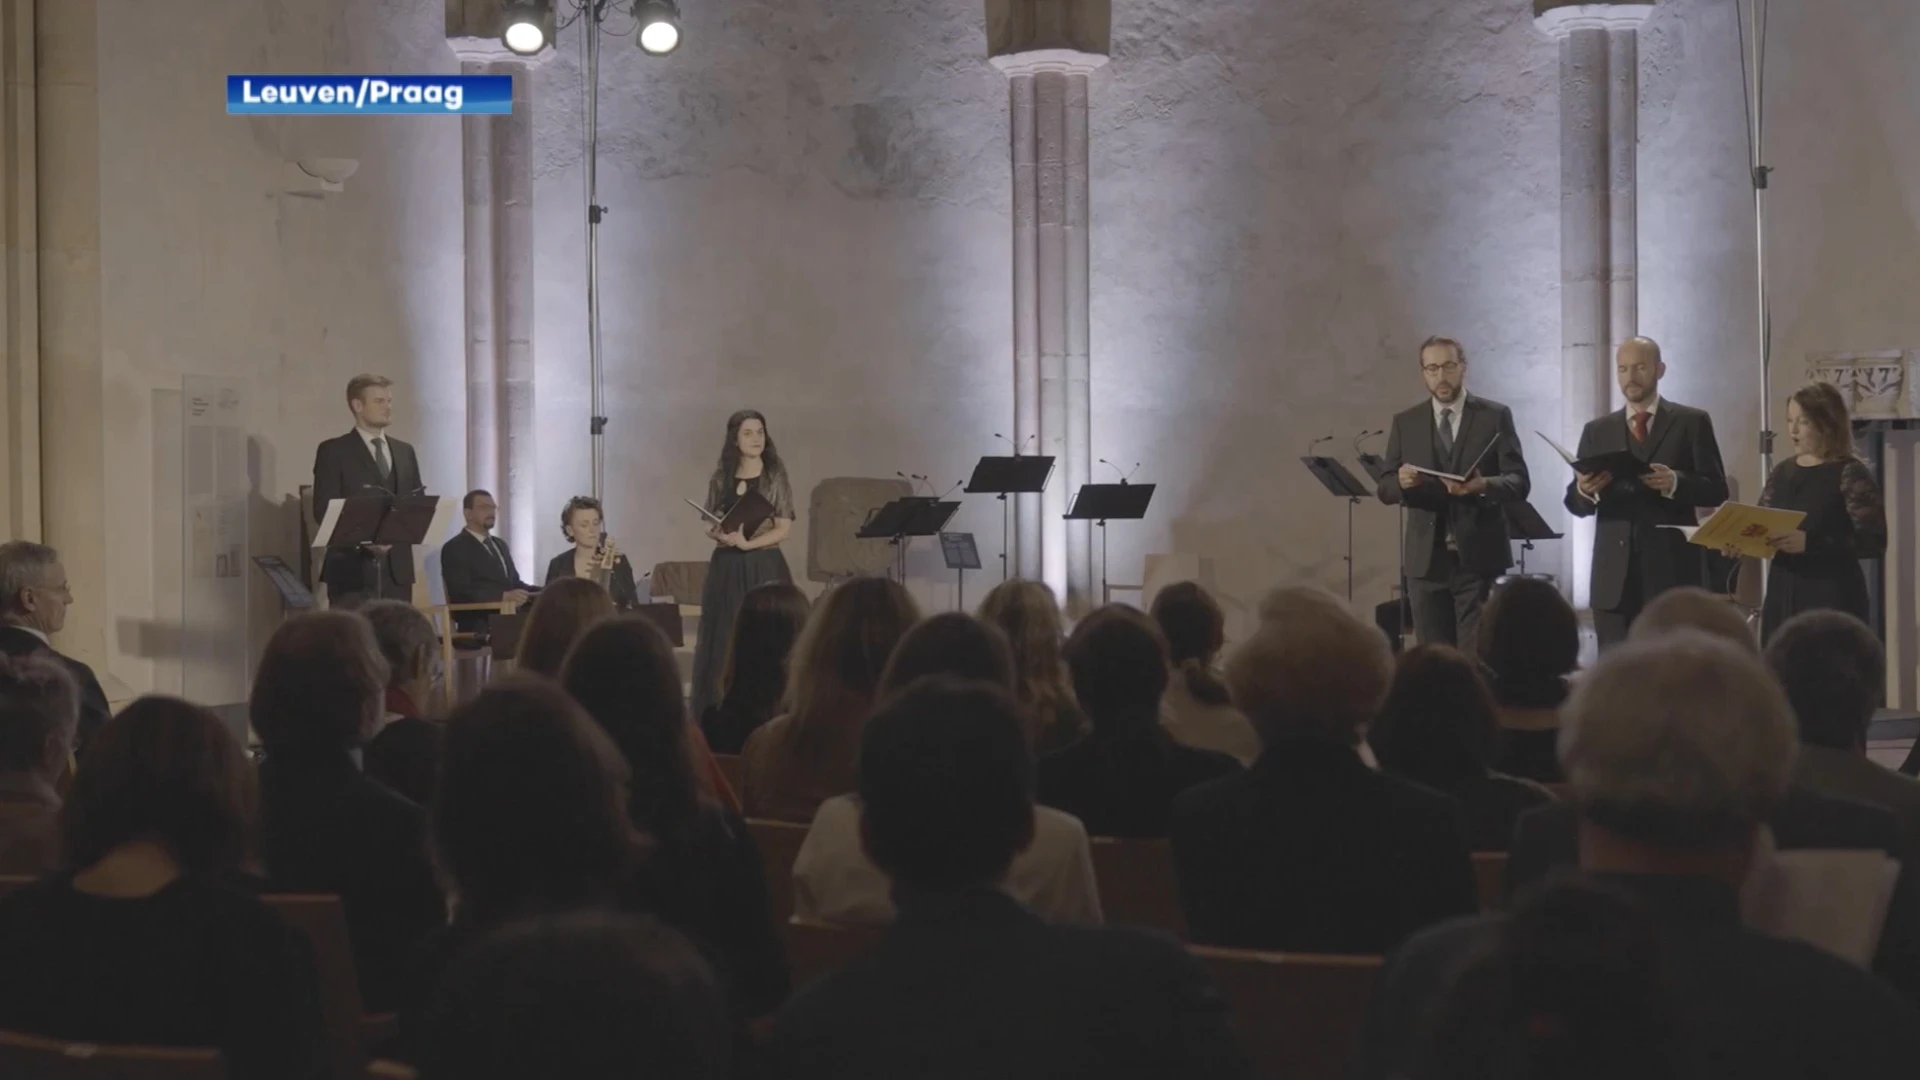 Leuvense Alamire Foundation en Tsjechisch ensemble brengen middeleeuwse muziek weer tot leven met eerste cd